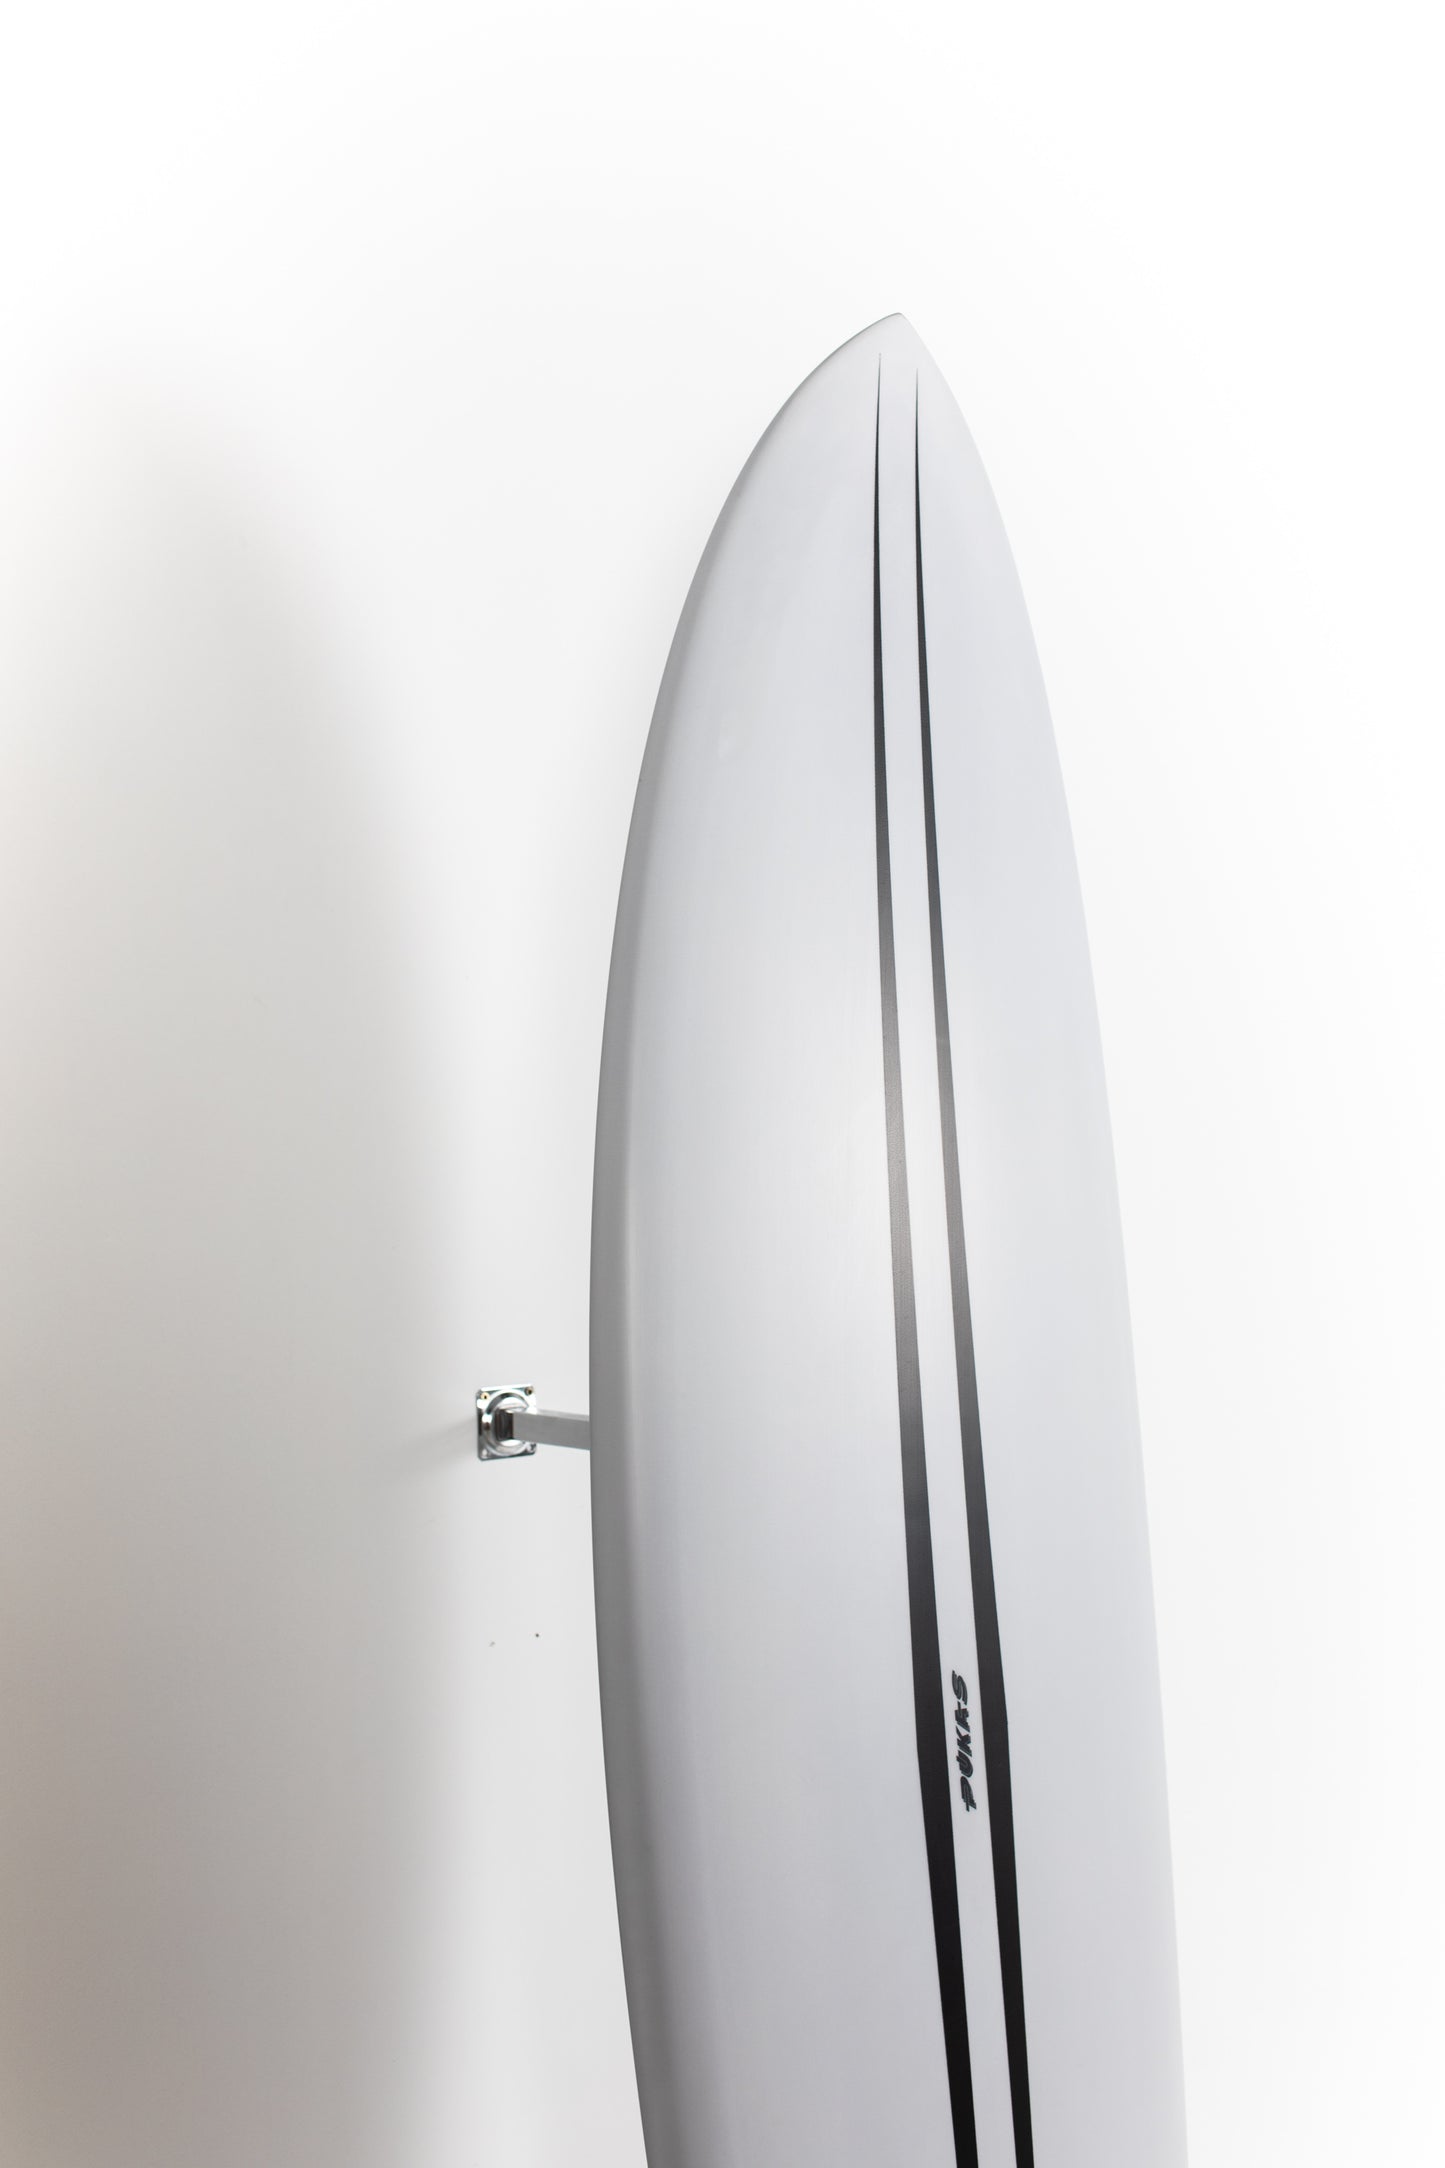 
                  
                    Pukas Surf Shop - Pukas Surfboard - LA CÔTE by Axel Lorentz - 6'10" x 21,38 x 2,94 - 46,8L -  AX08572
                  
                